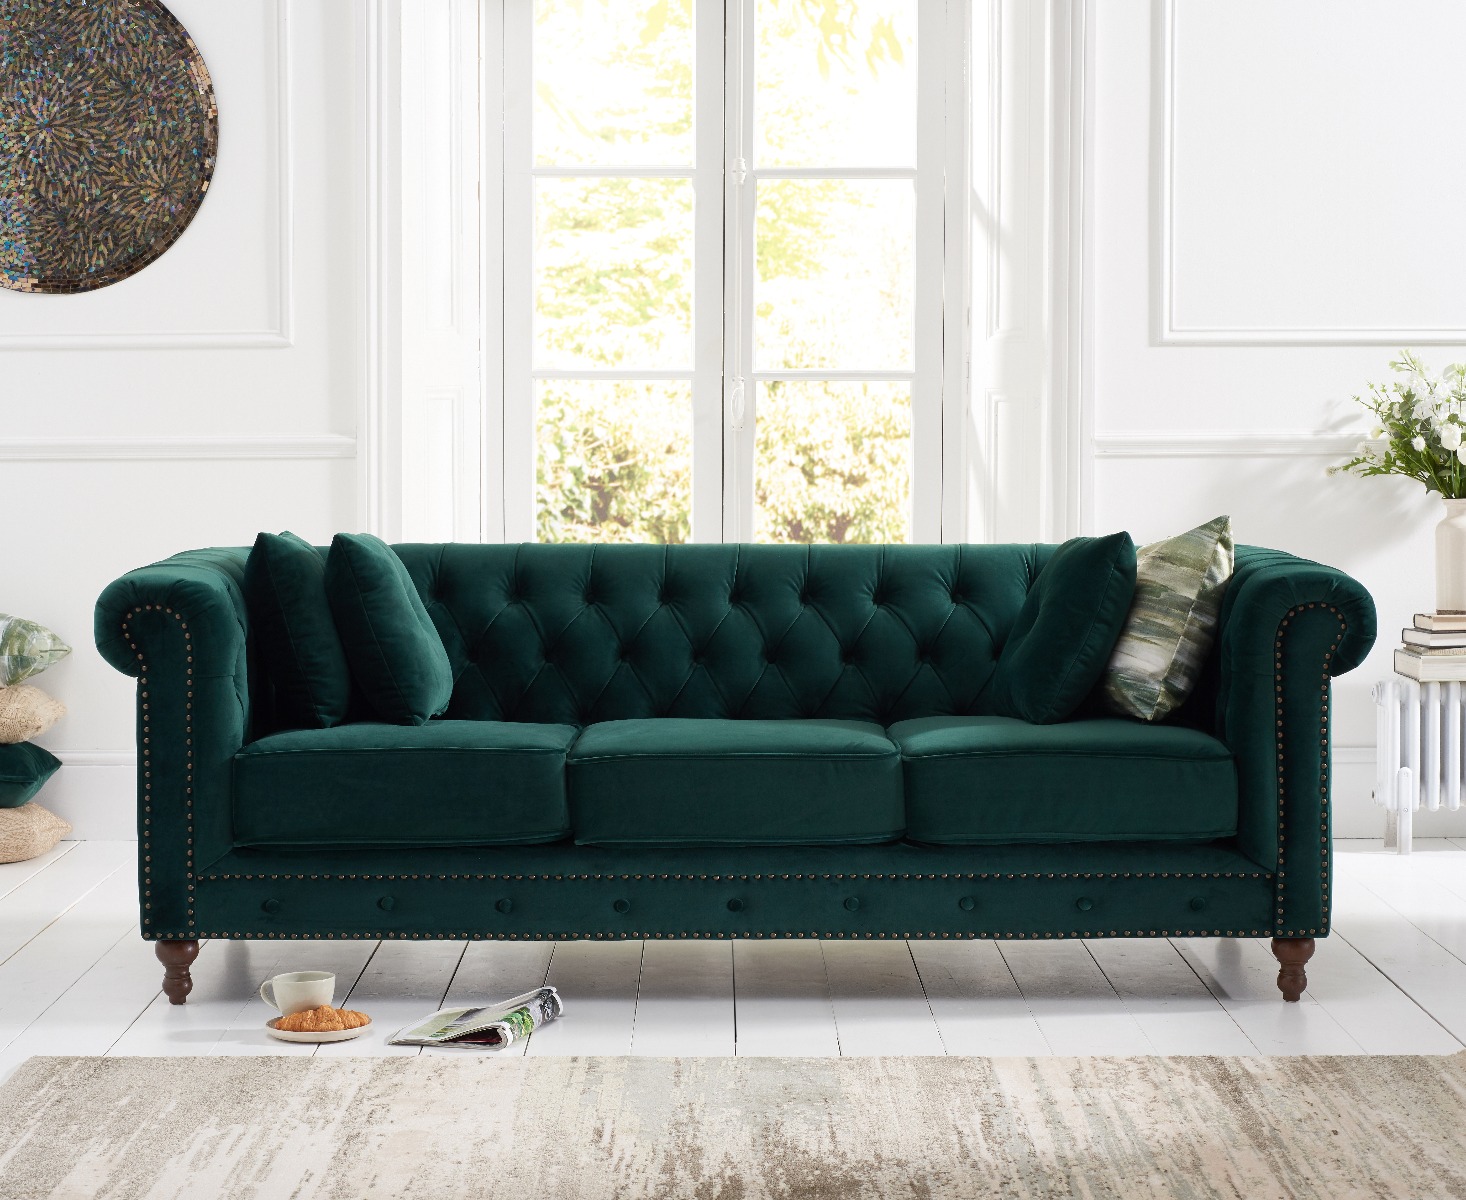 Westminster Chesterfield Green Velvet 3 Seater Sofa